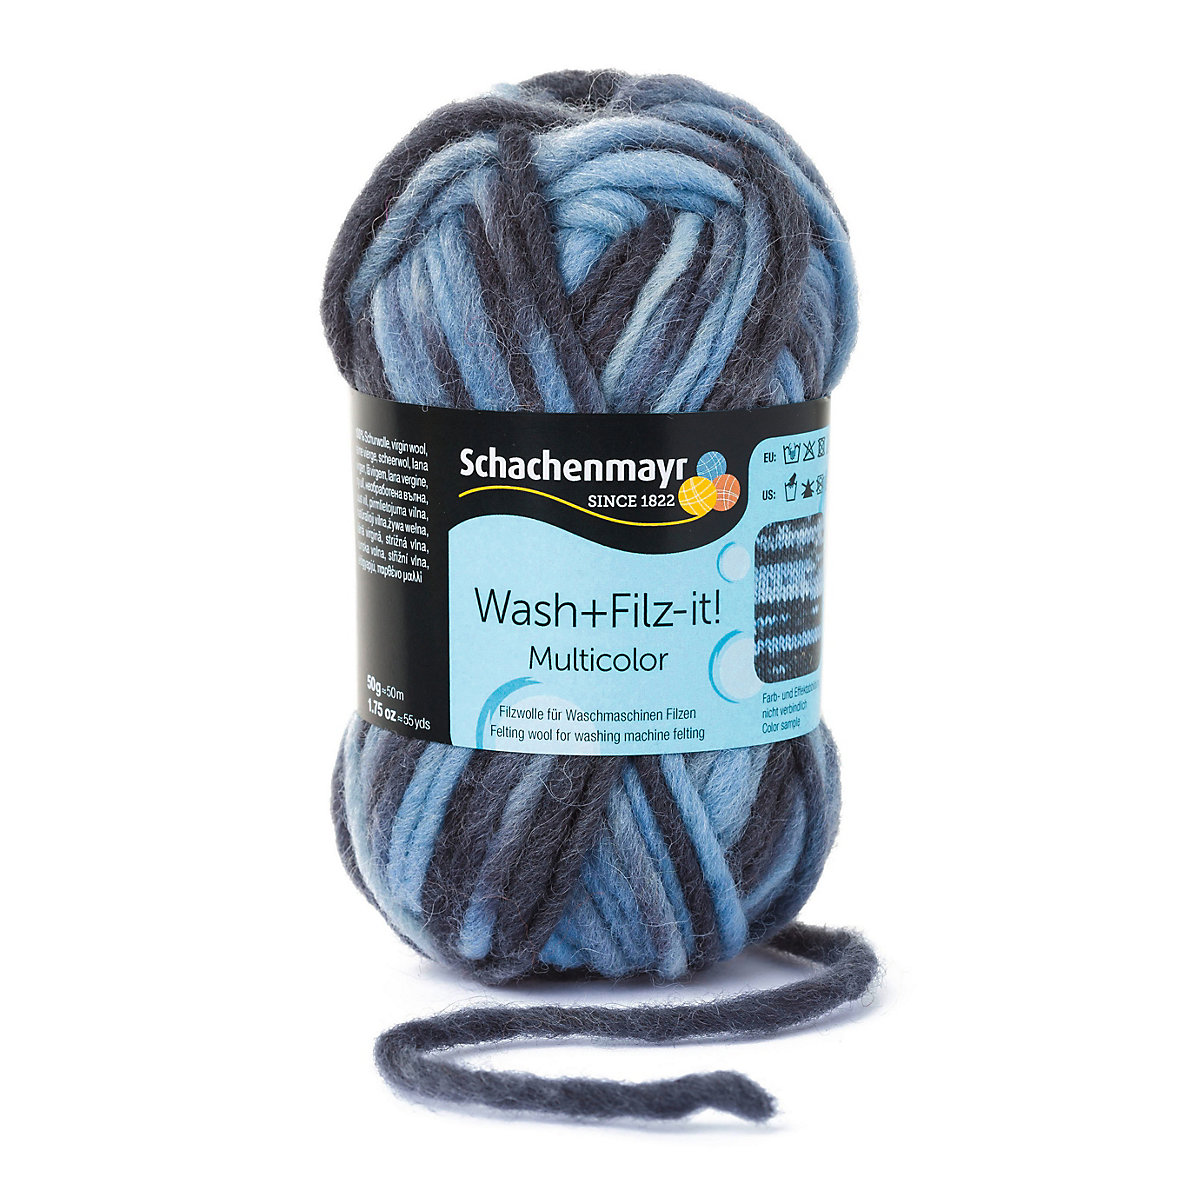 Schachenmayr Filzgarne Wash+Filz-it! Multicolor 50g bleu-graphit